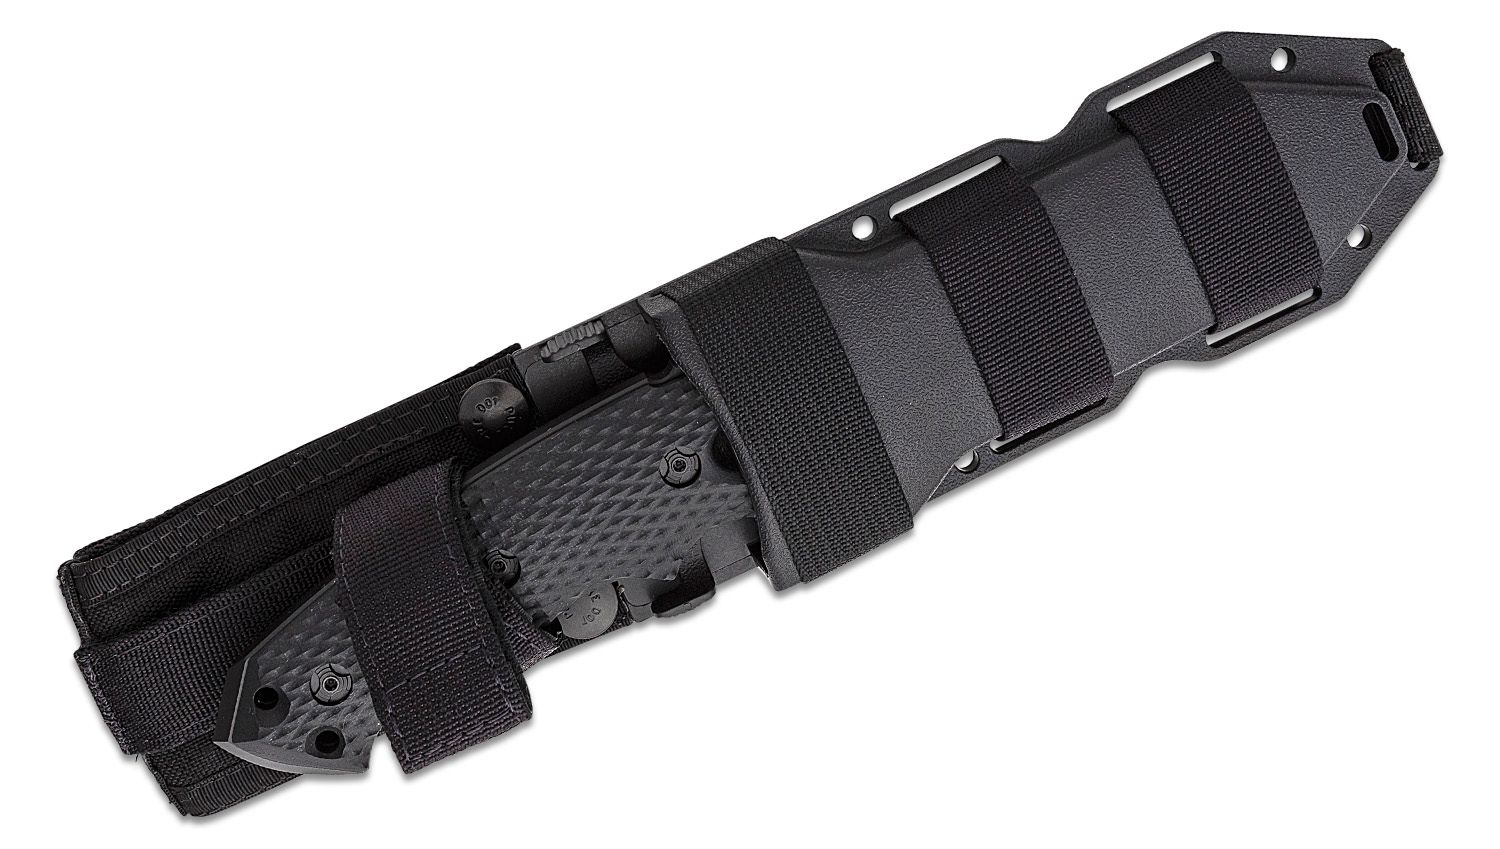 EX-F01 Tanto mit feststehender Klinge – schwarzes G10